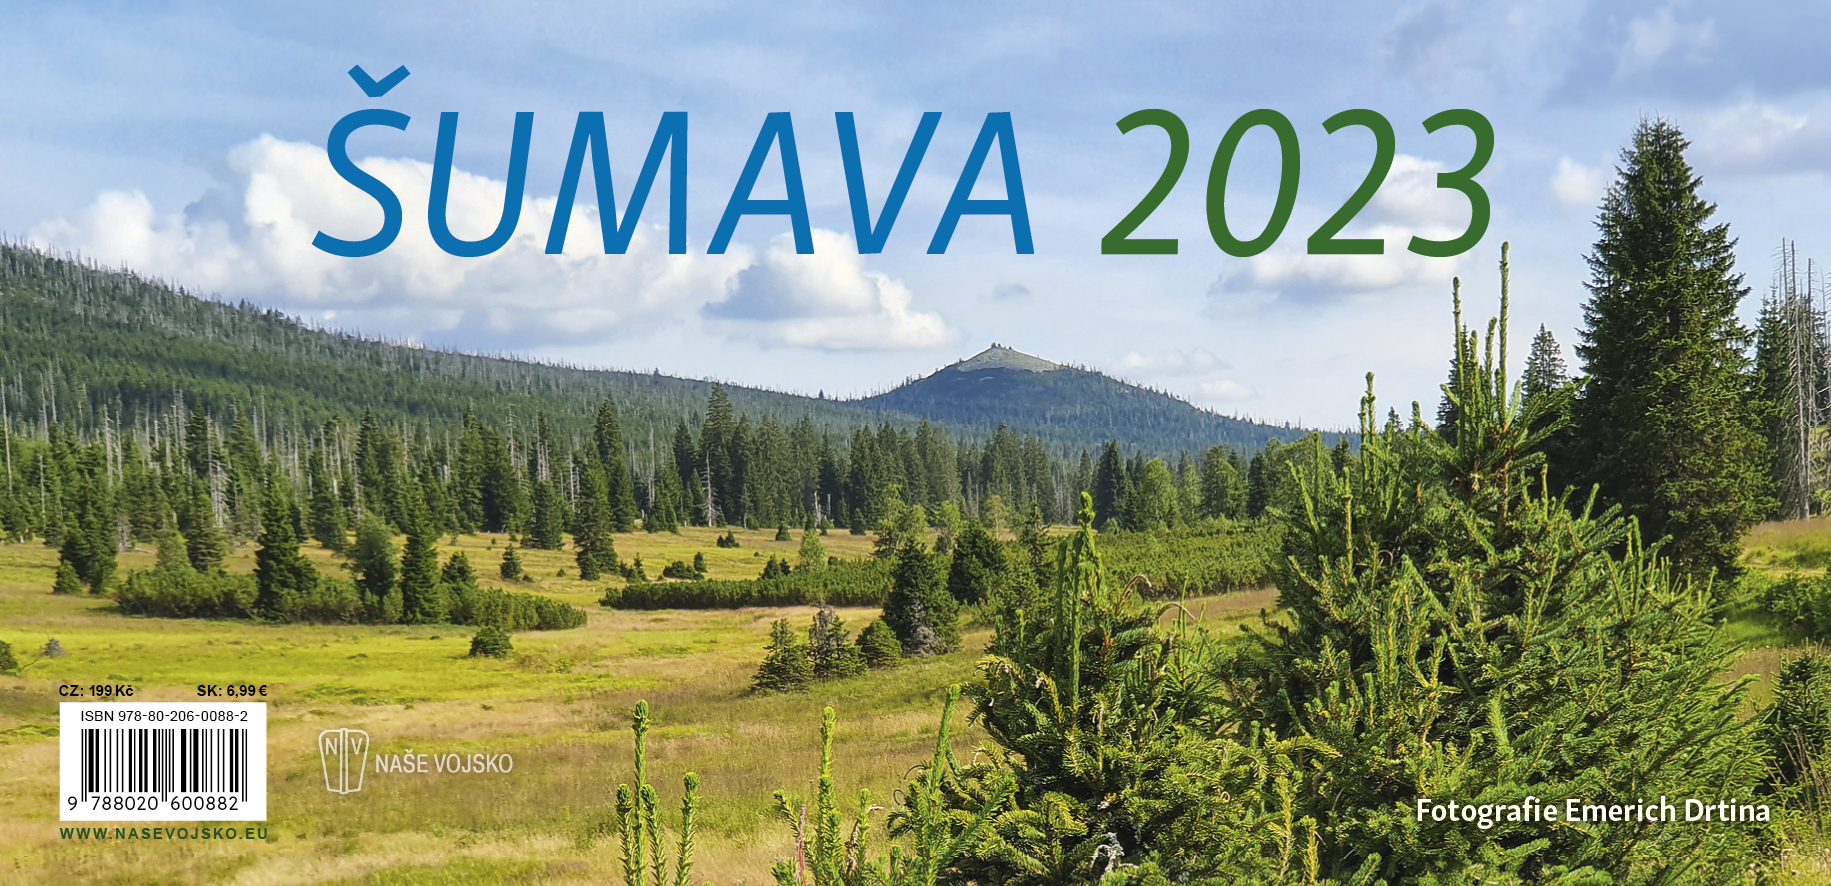 Stolní kalendář/kalendár Šumava 2023 - vyjde 31.05.2022